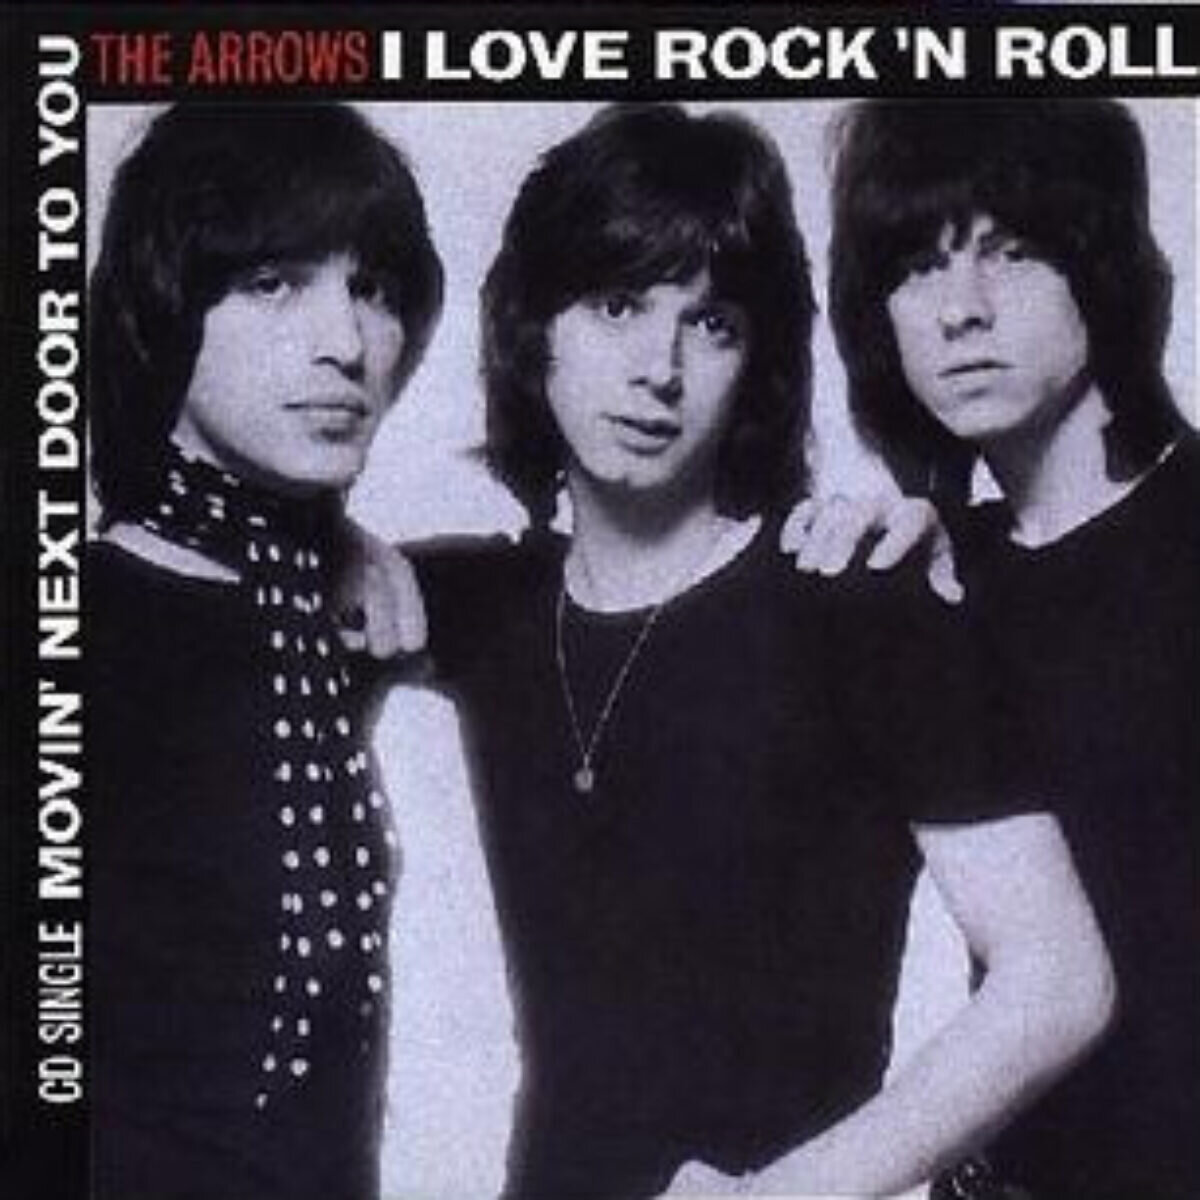 Rock i roll песня. The arrows группа. The arrows i Love Rock and Roll. I Love Rock'n'Roll arrows. Love рок группа.